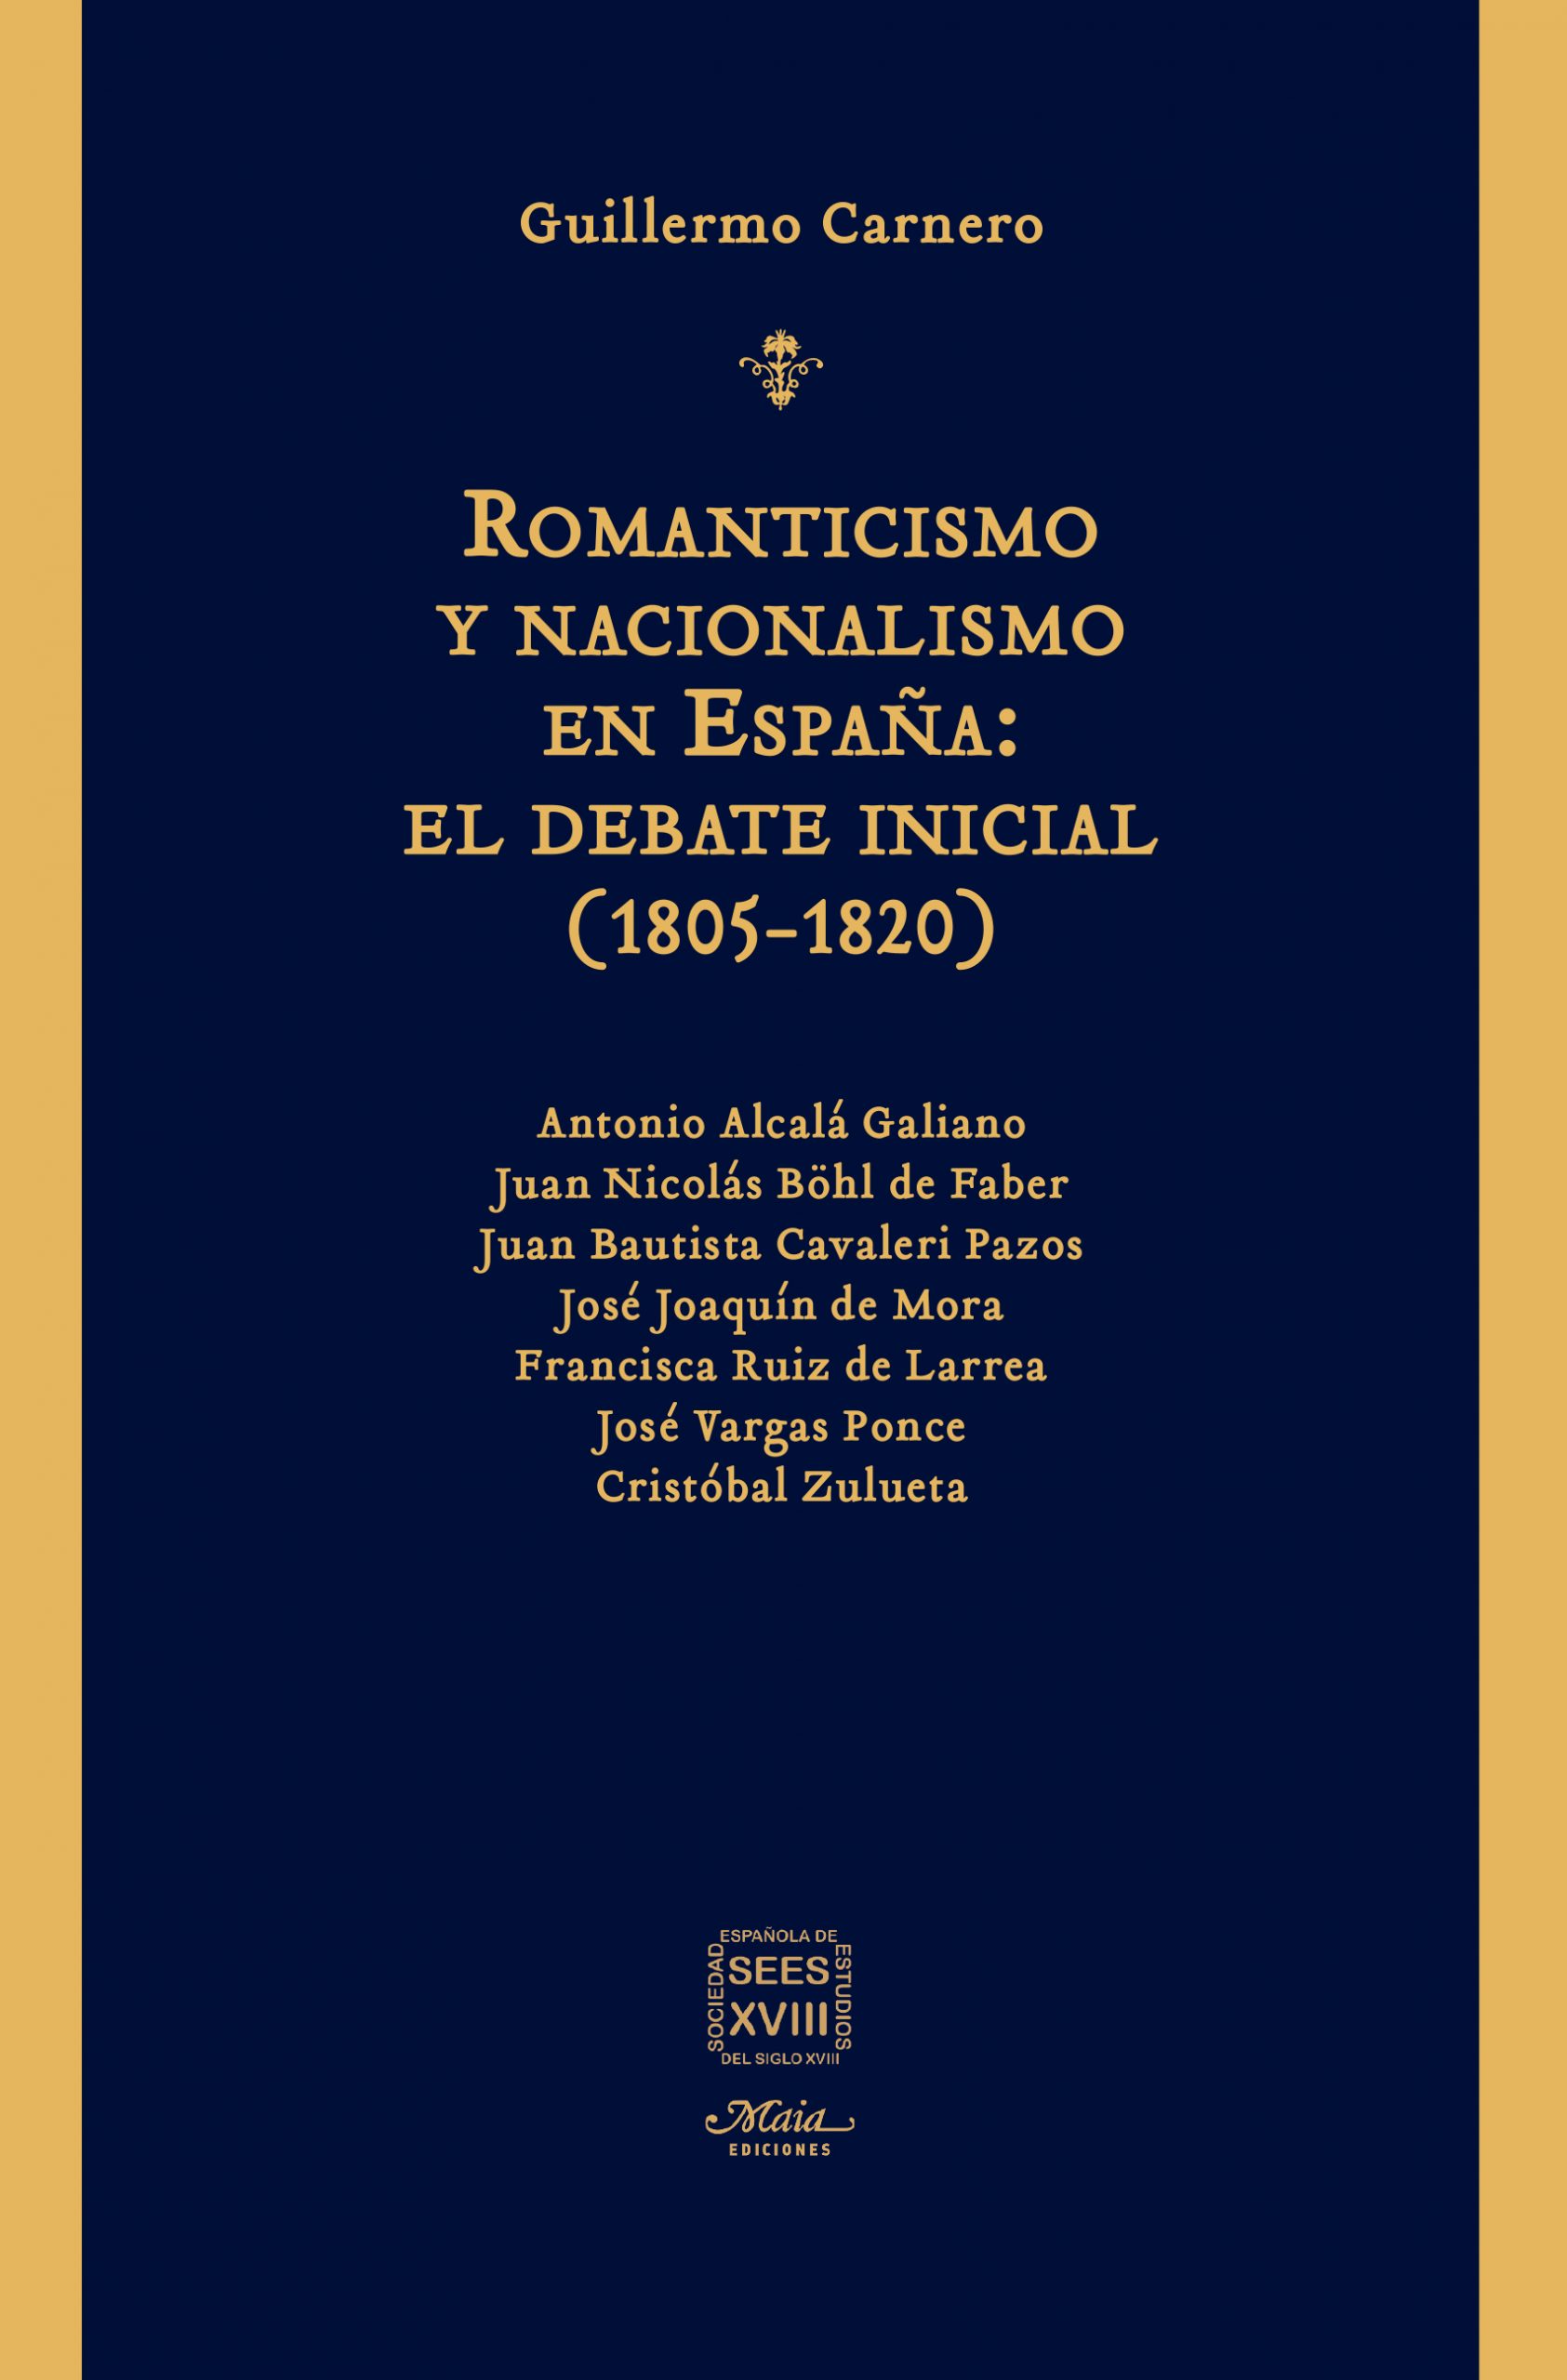 Romancistismo y nacionalismo en España: El debate inicial (1805-1820)